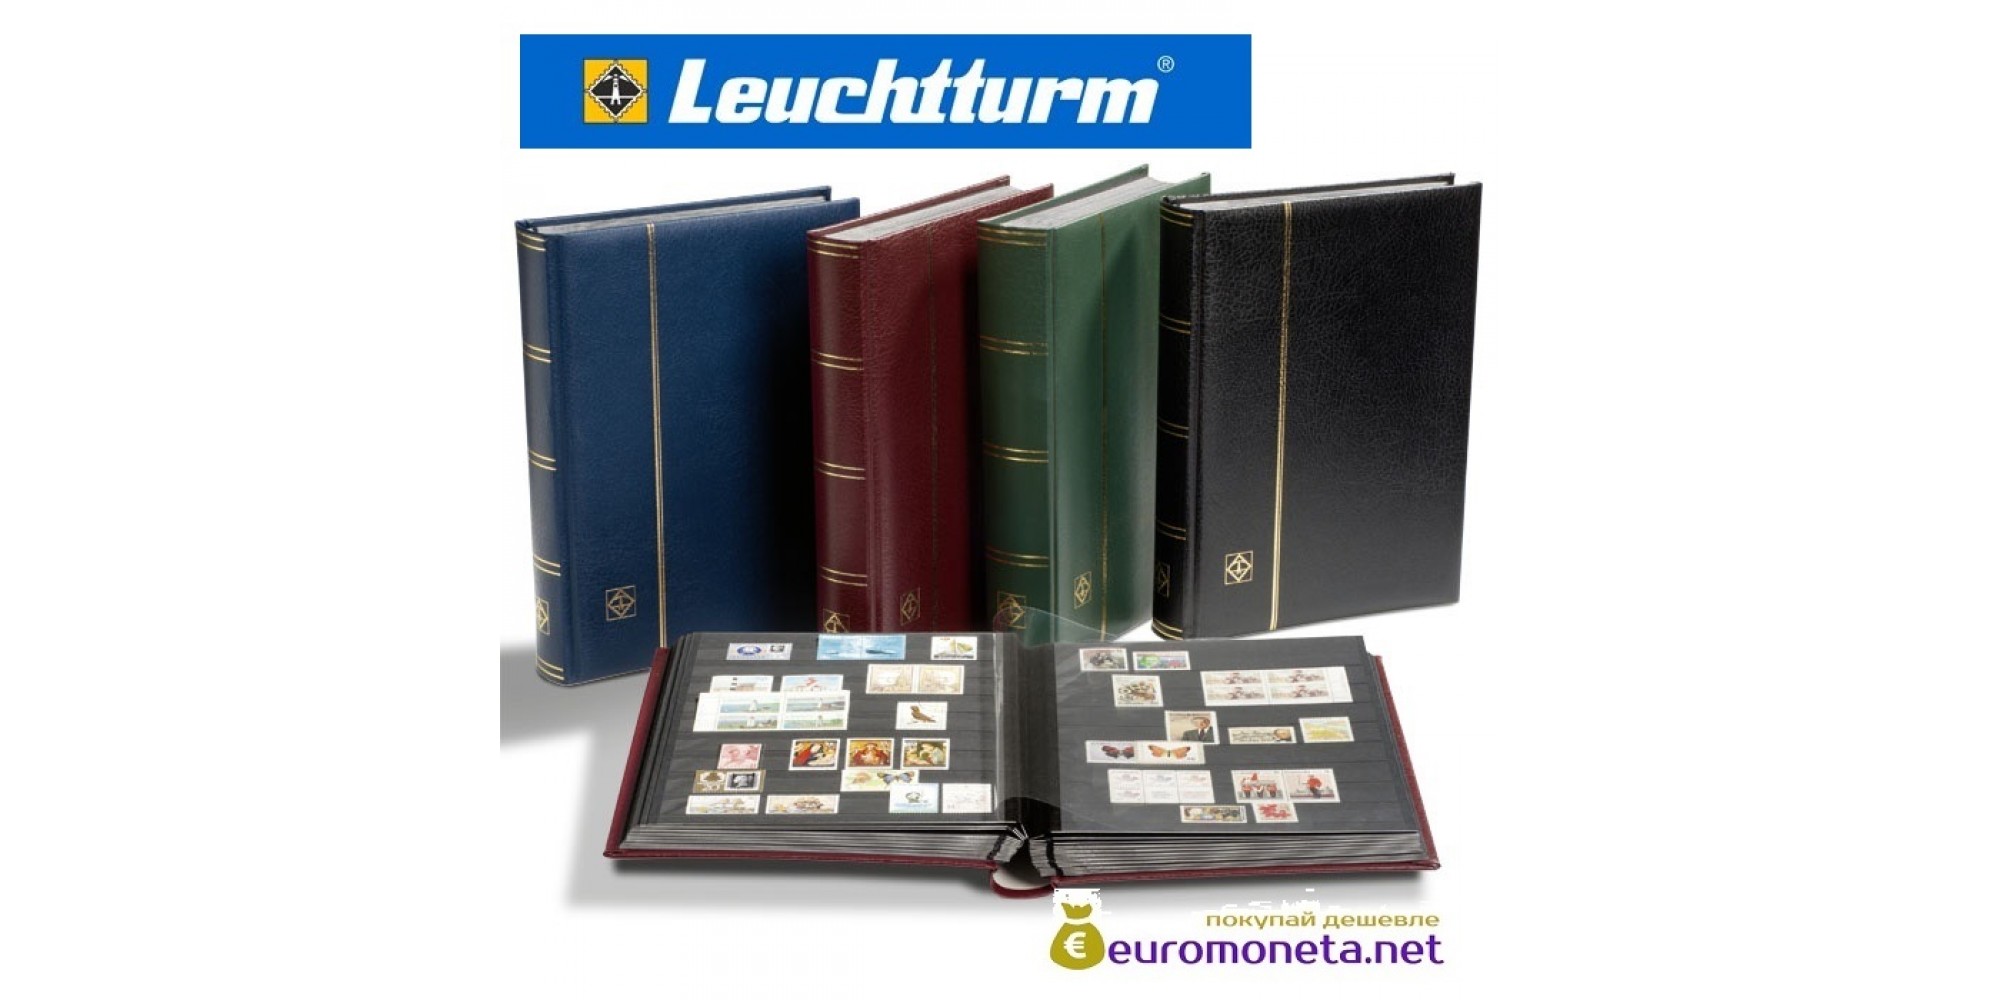 Leuchtturm альбом PREMIUM DIN A4 S64 чёрные страницы, кожаная обложка, зелёный, Германия